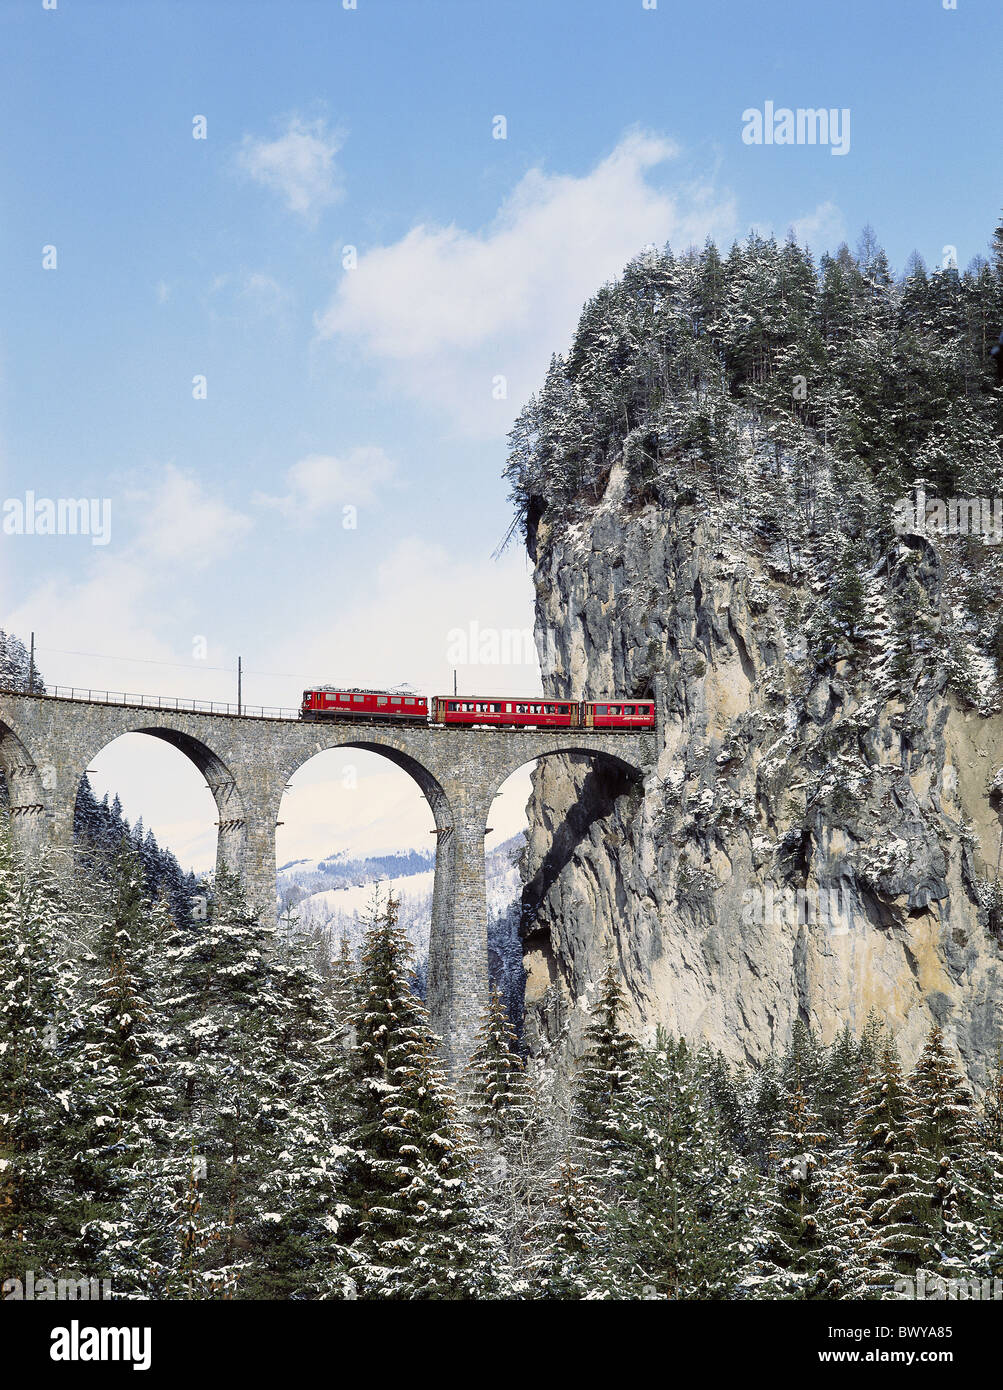 Stazione ferroviaria Svizzera Europa Grigioni Grigioni Ferrovia Retica svizzera Europa treno Glacier Express viad Foto Stock